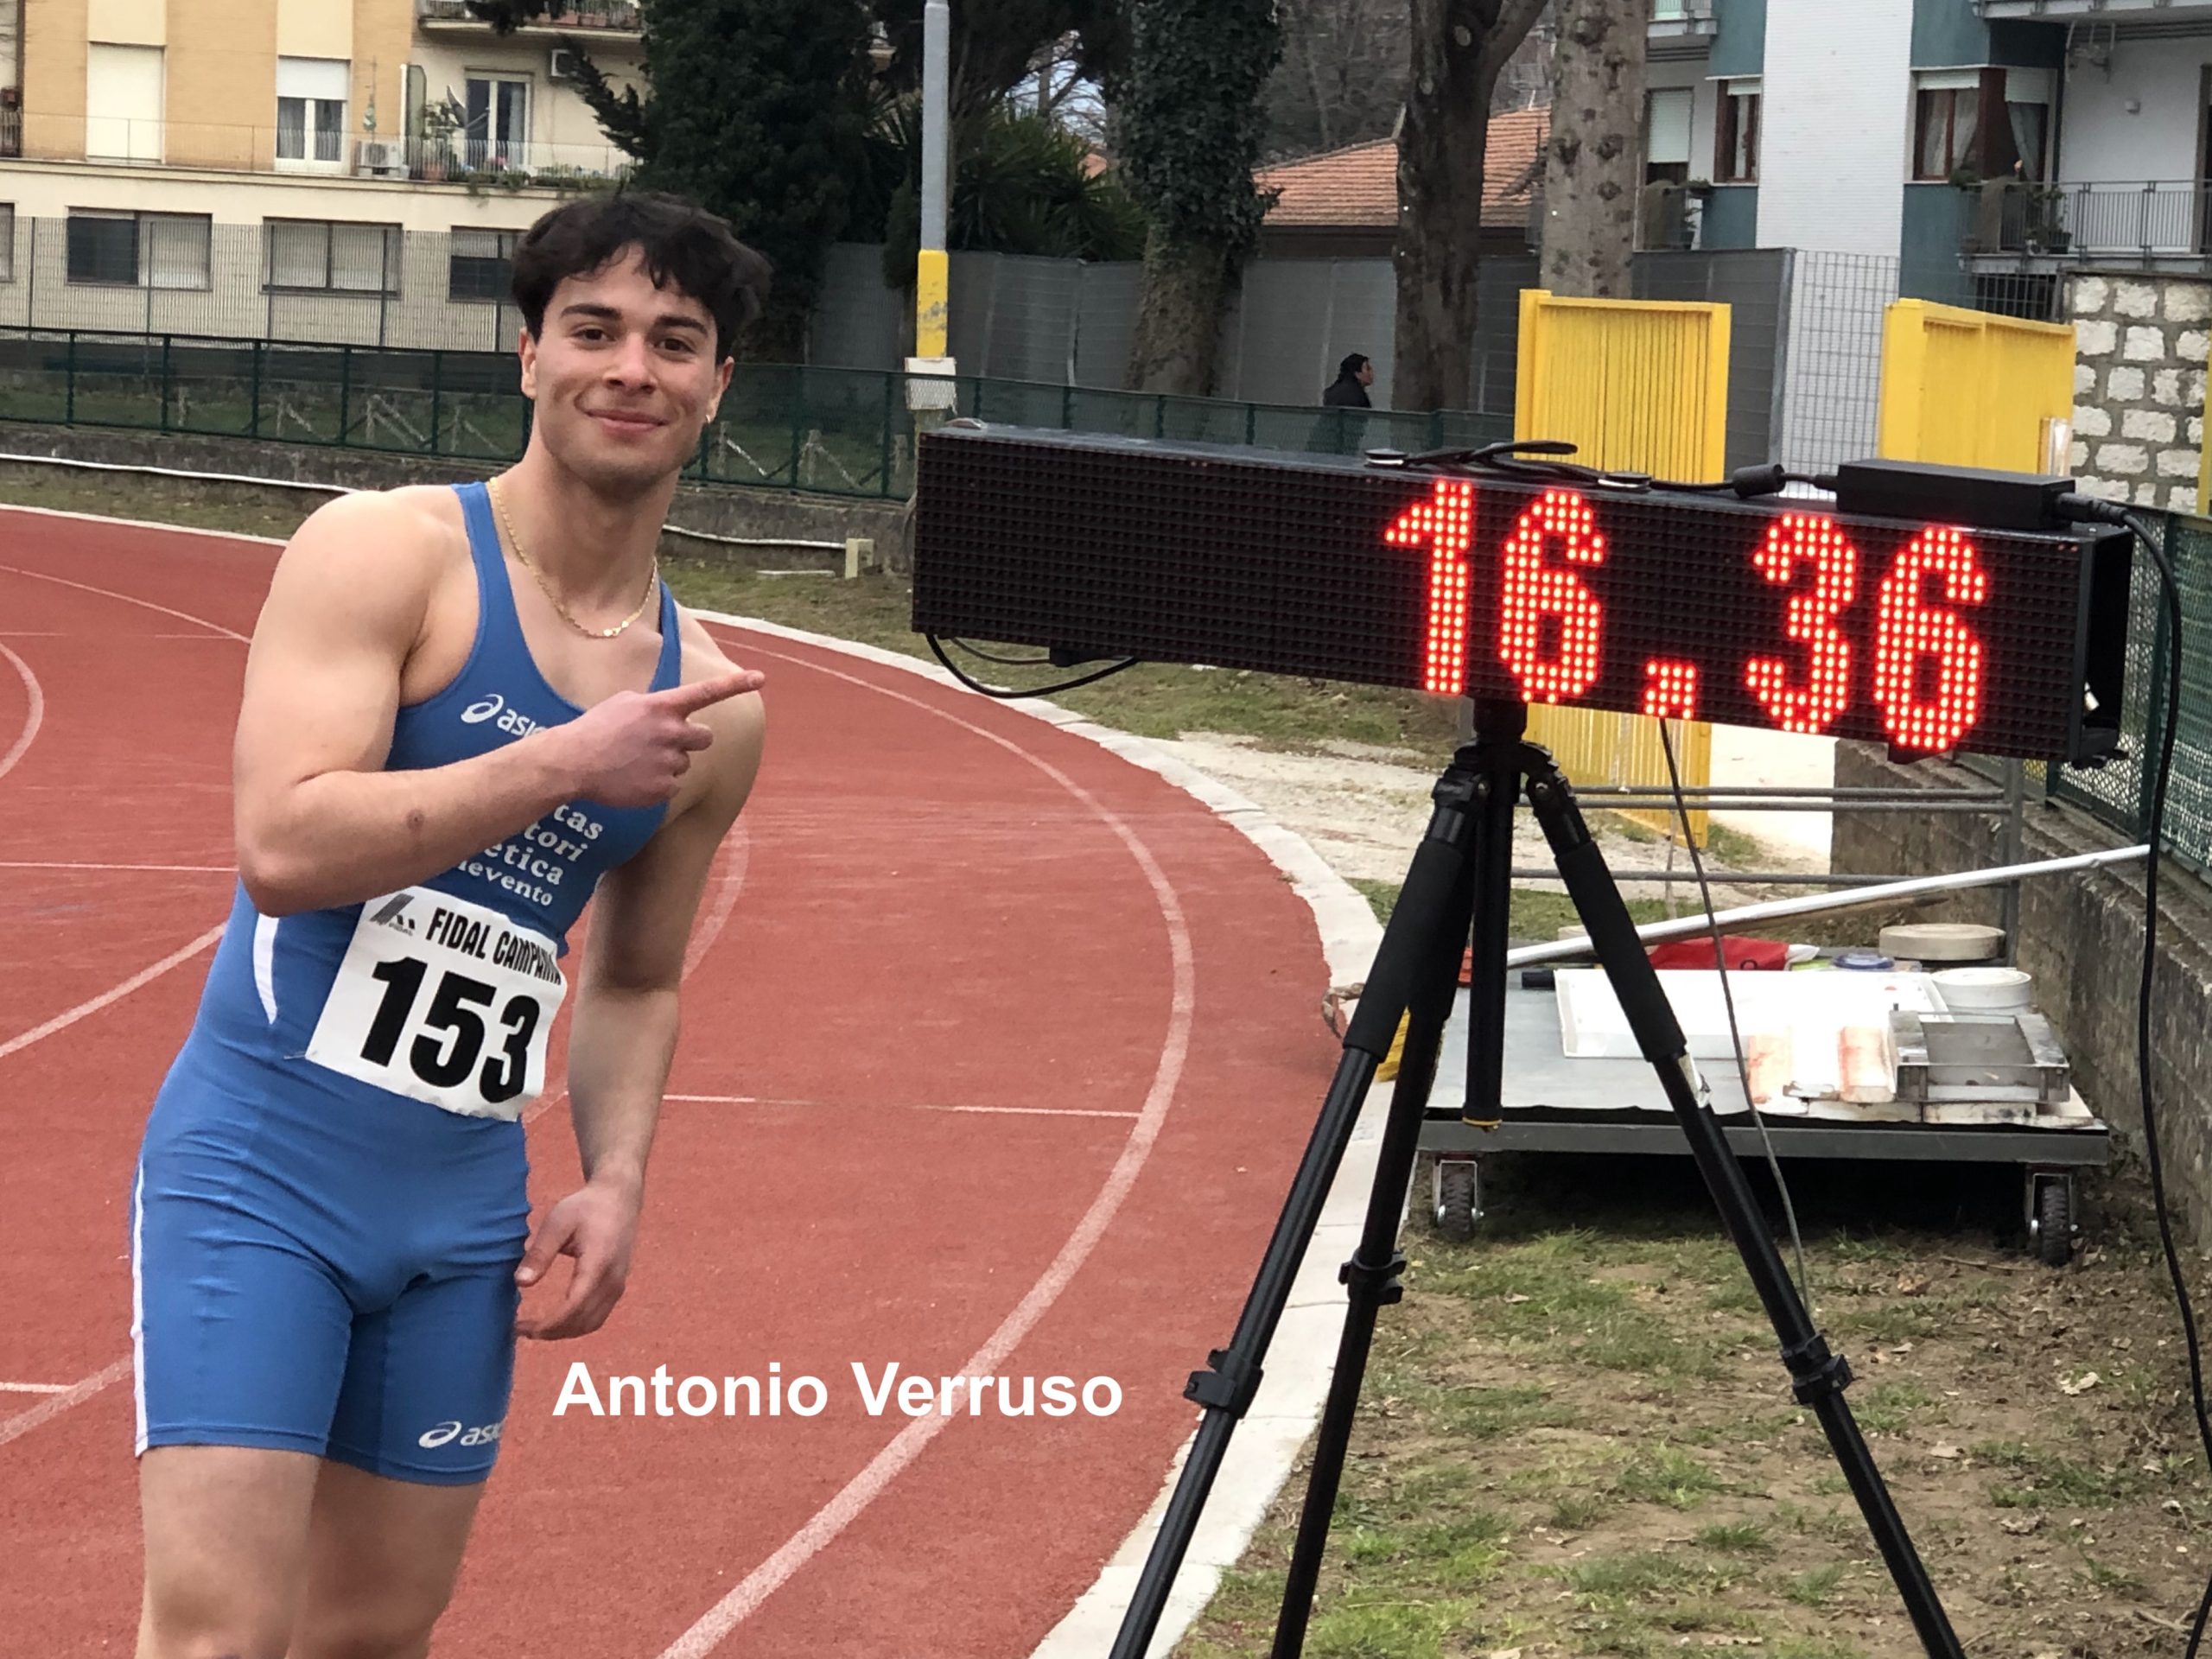 Atletica, Libertas Benevento: il velocista Verruso stabilisce nuovo recordo regionale nei 150m